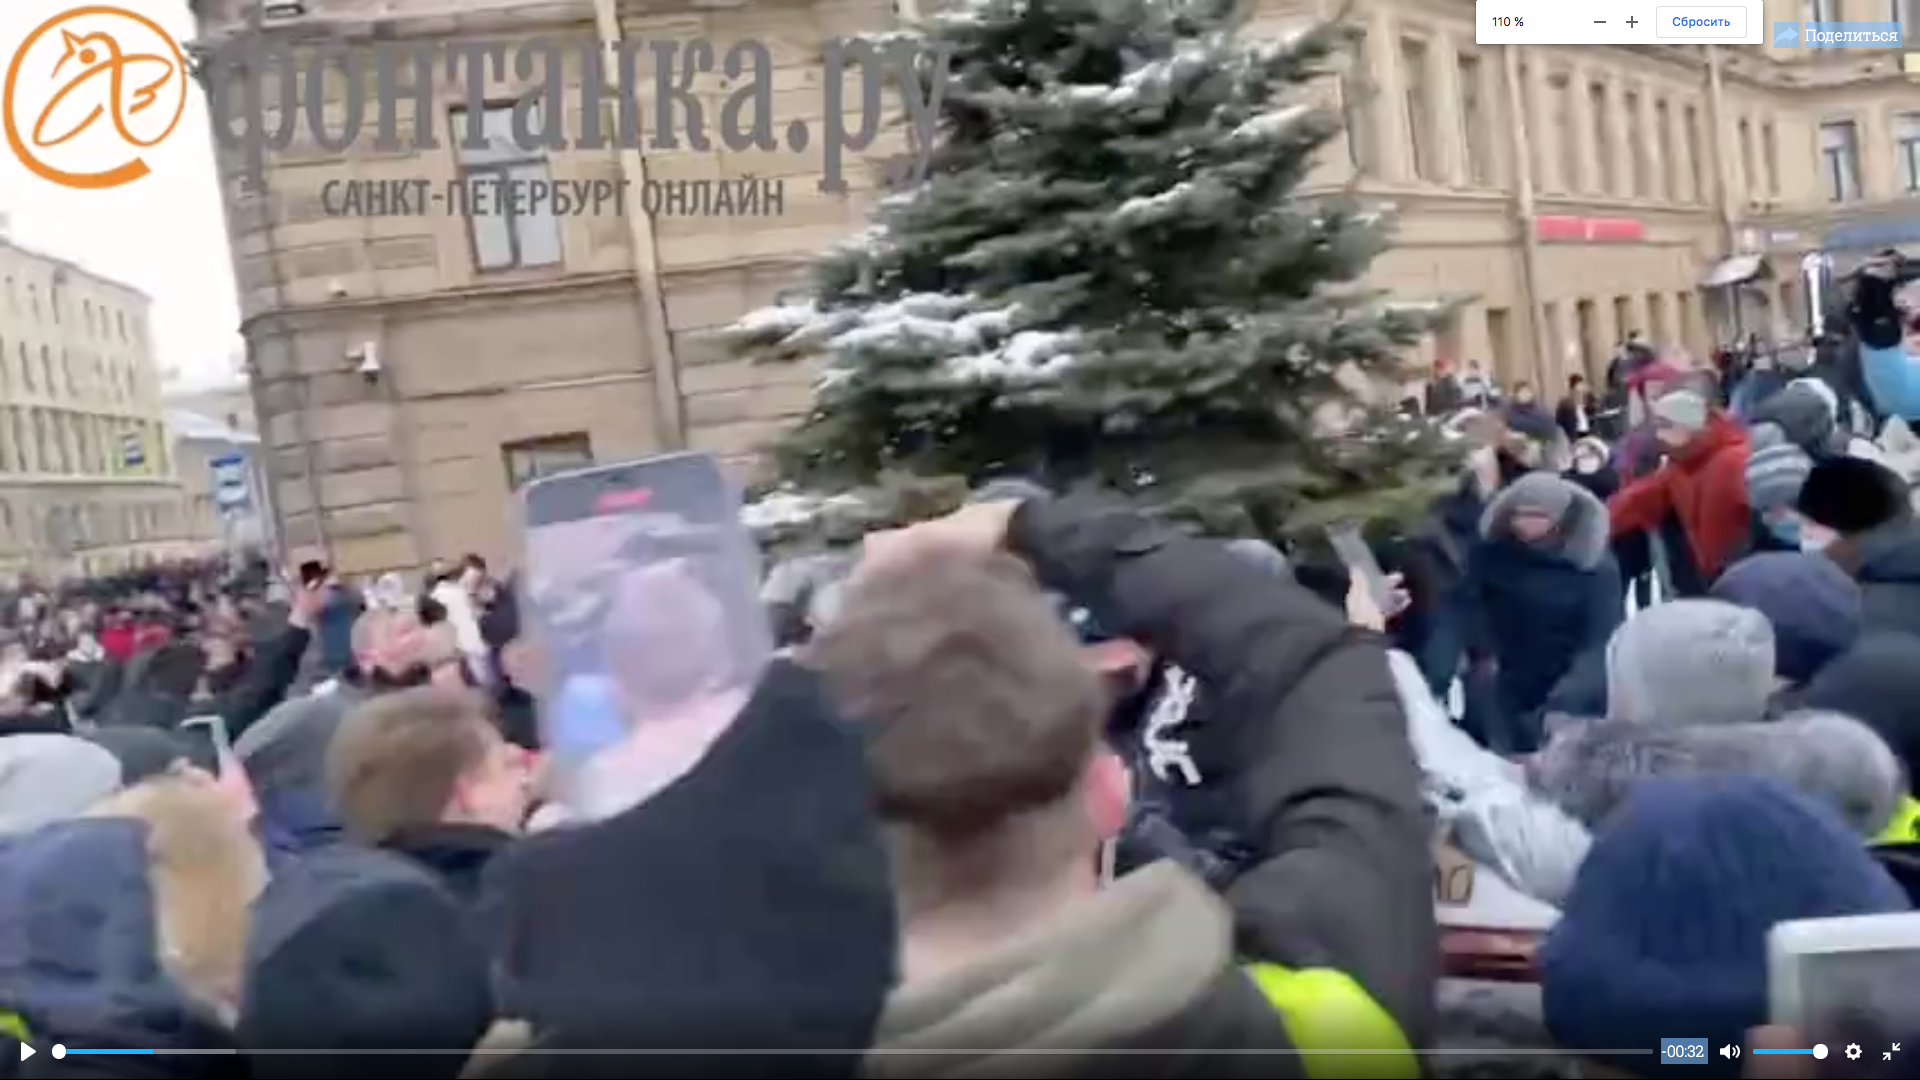 "Фонтанка": на Сенной площади Петербурга полиция применила газ против протестующих